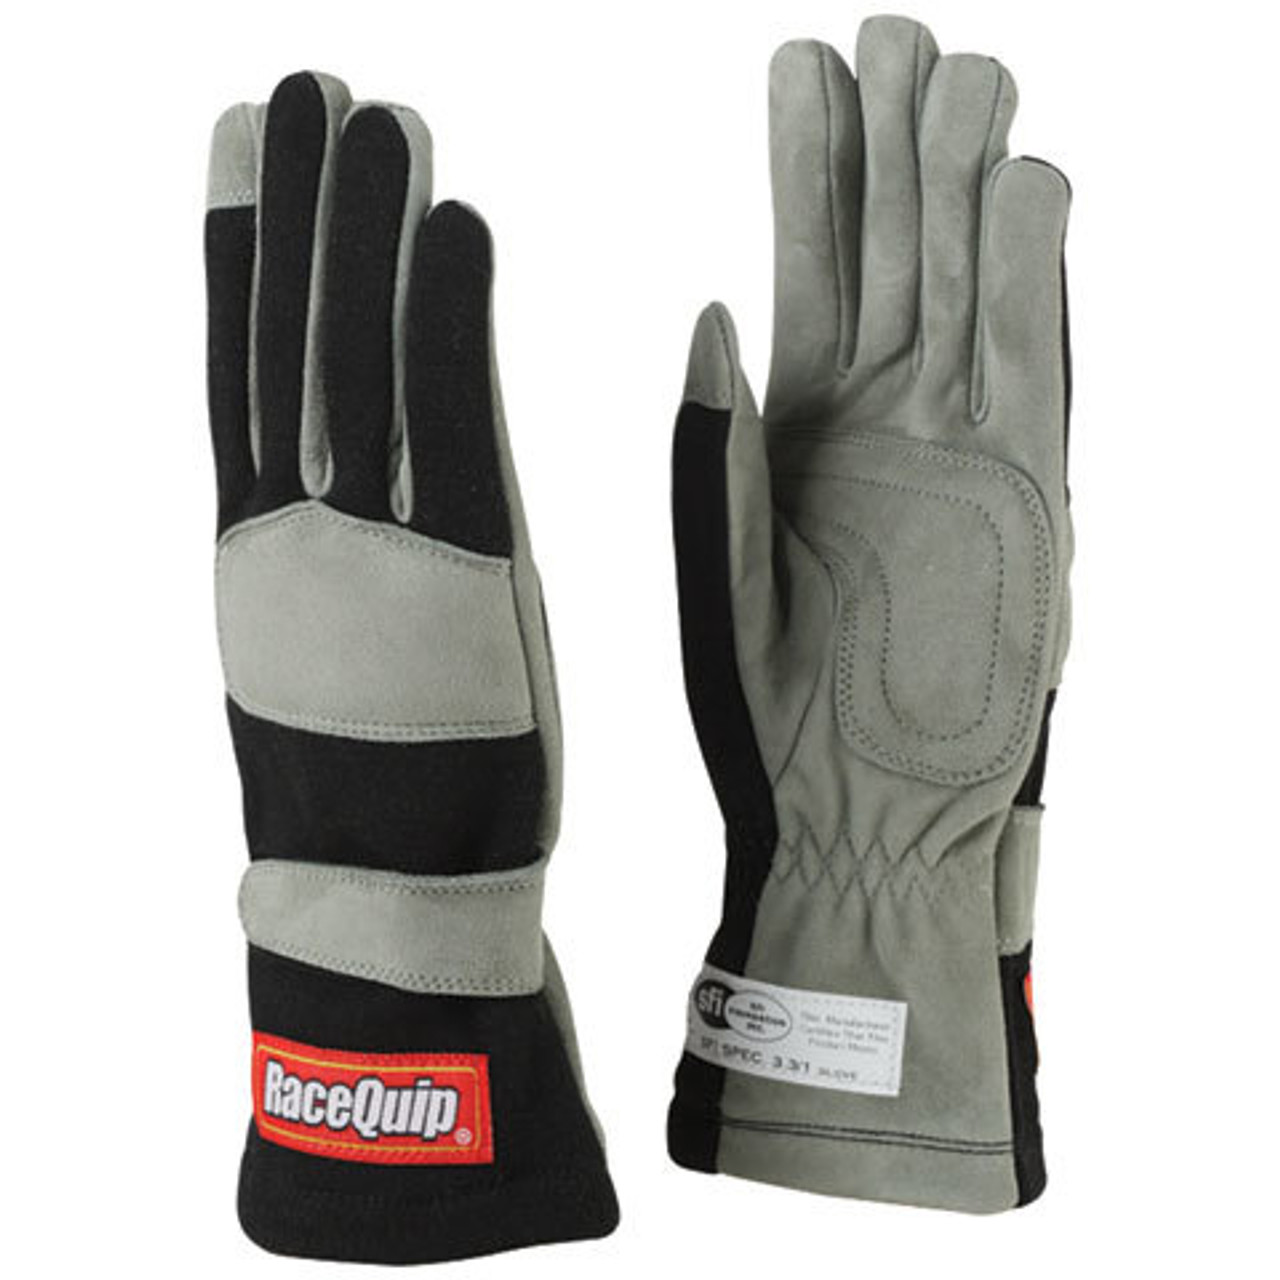 RaceQuip Gloves Single Layer Large Black SFI